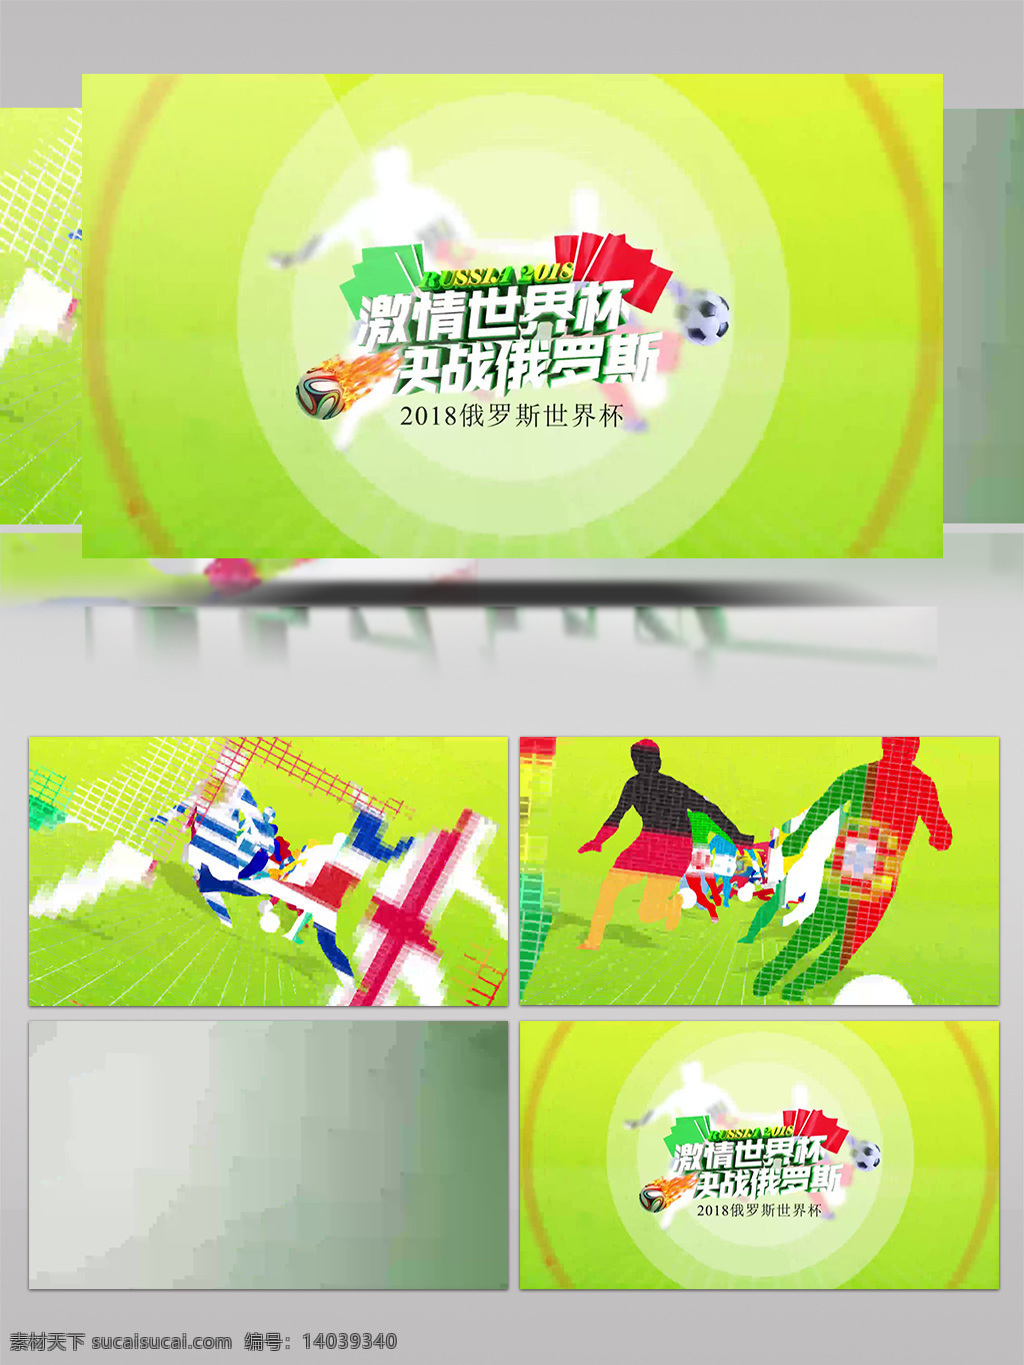 像素 化 拼贴 足球 运动员 剪影 体育赛事 开场 包装 体育 运动 展示 宣传 世界杯 奥运会 俄罗斯